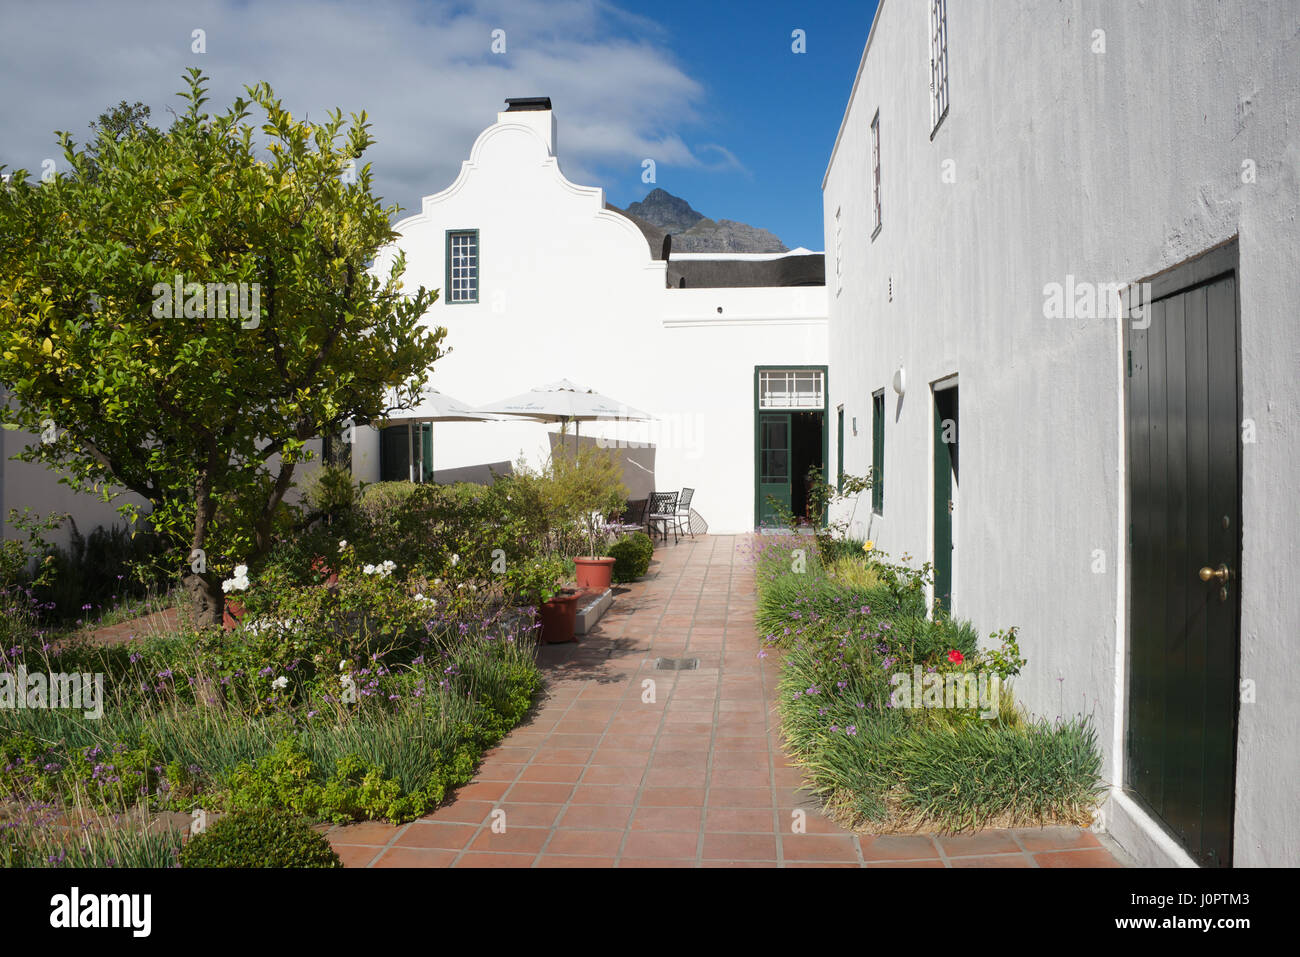 Hof Cape niederländischen Architektur Mowbray Kapstadt Südafrika Stockfoto